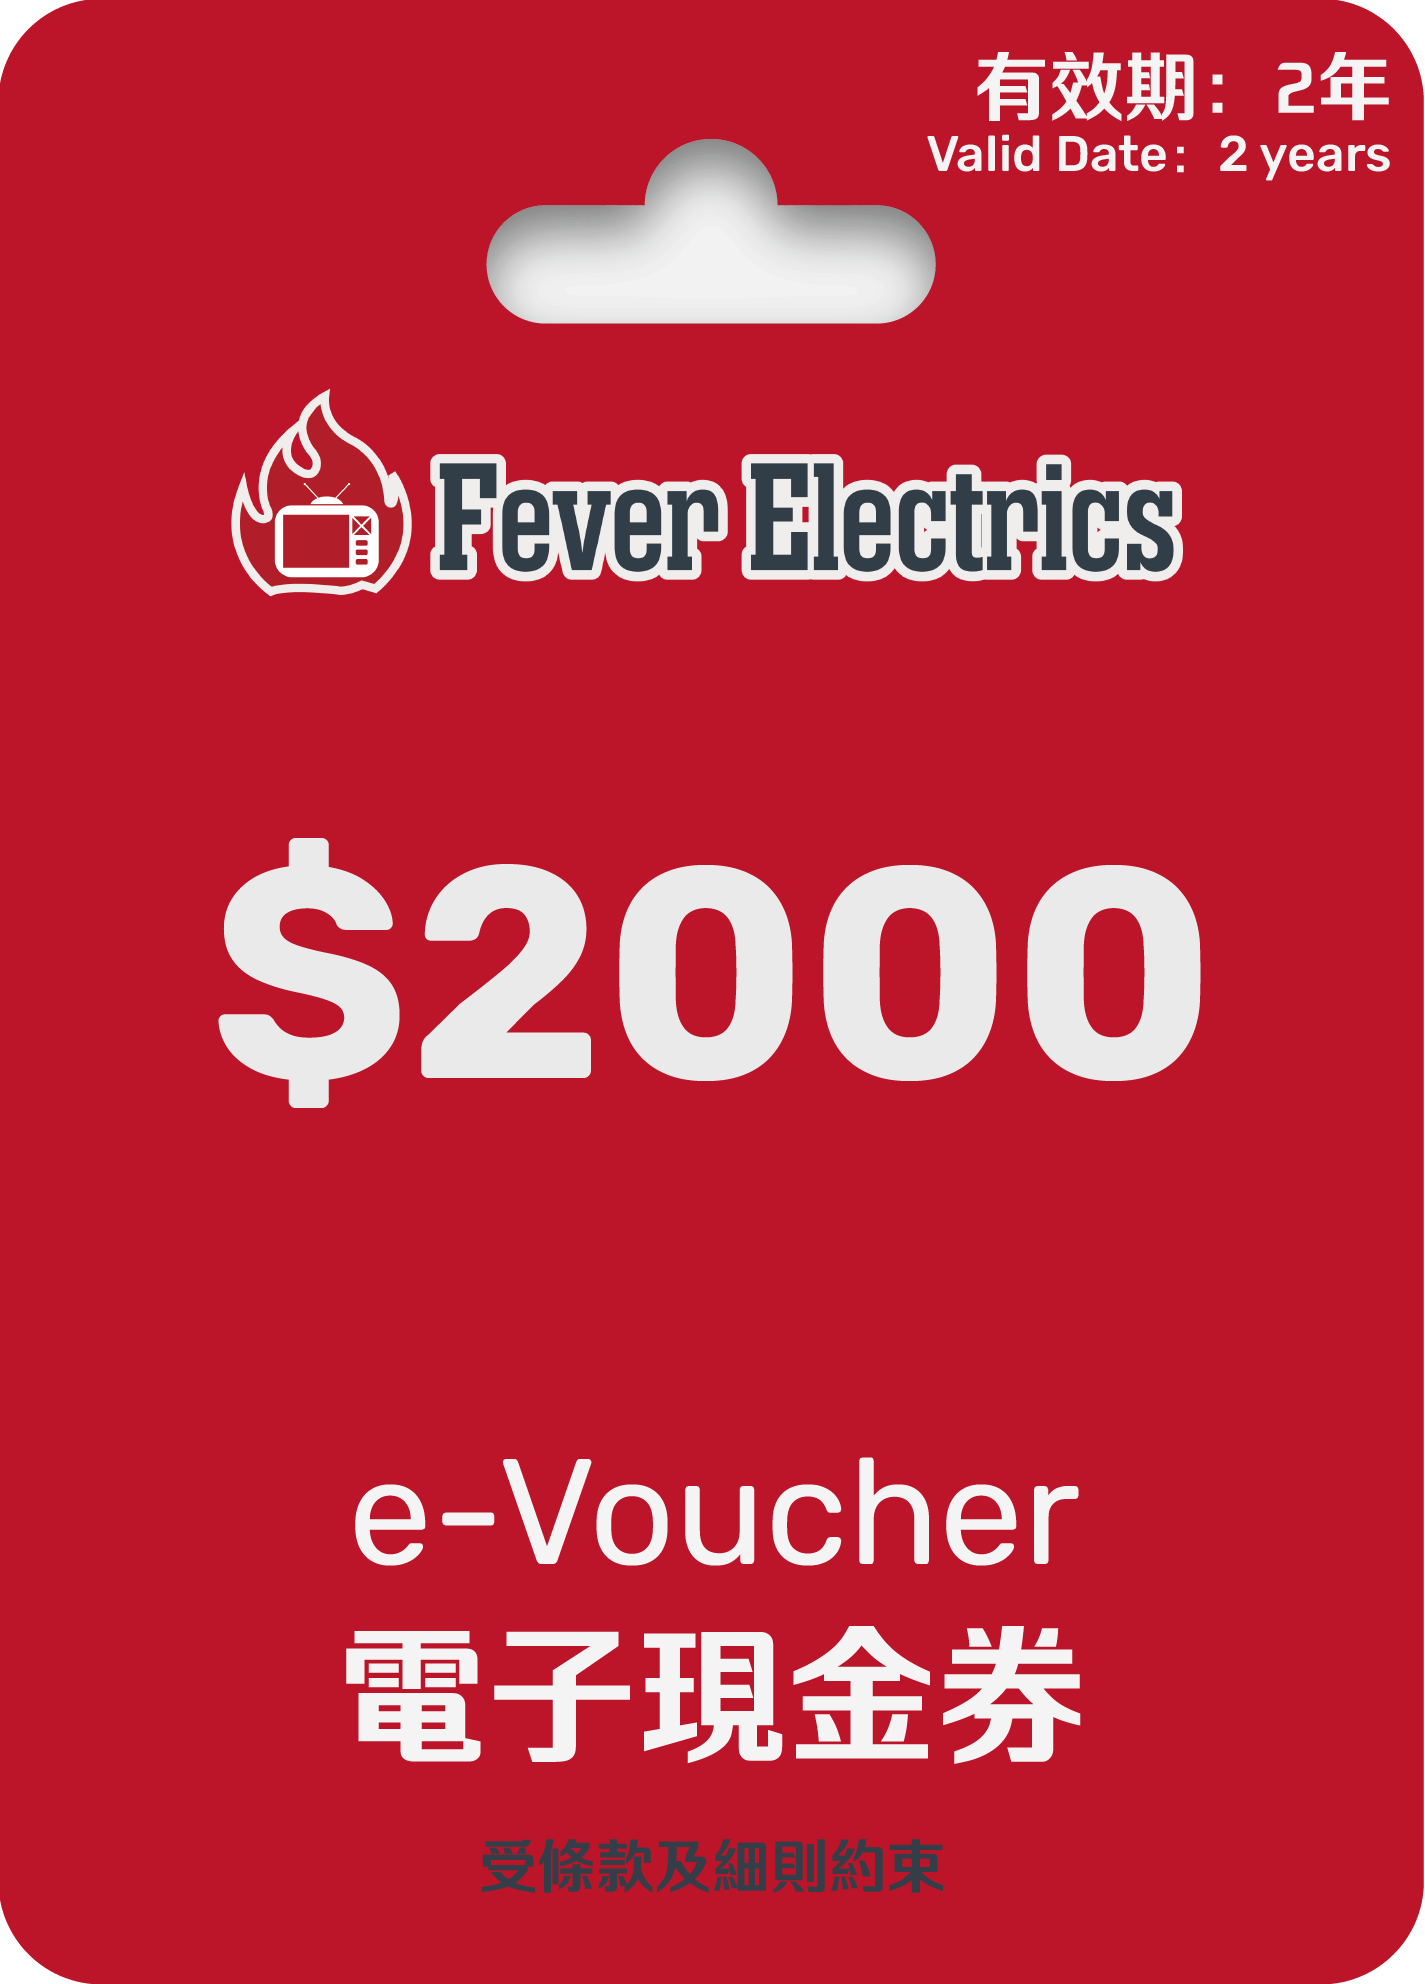 HK$2000 Fever e - Voucher (電子現金券) - Fever Electrics 電器熱網購平台